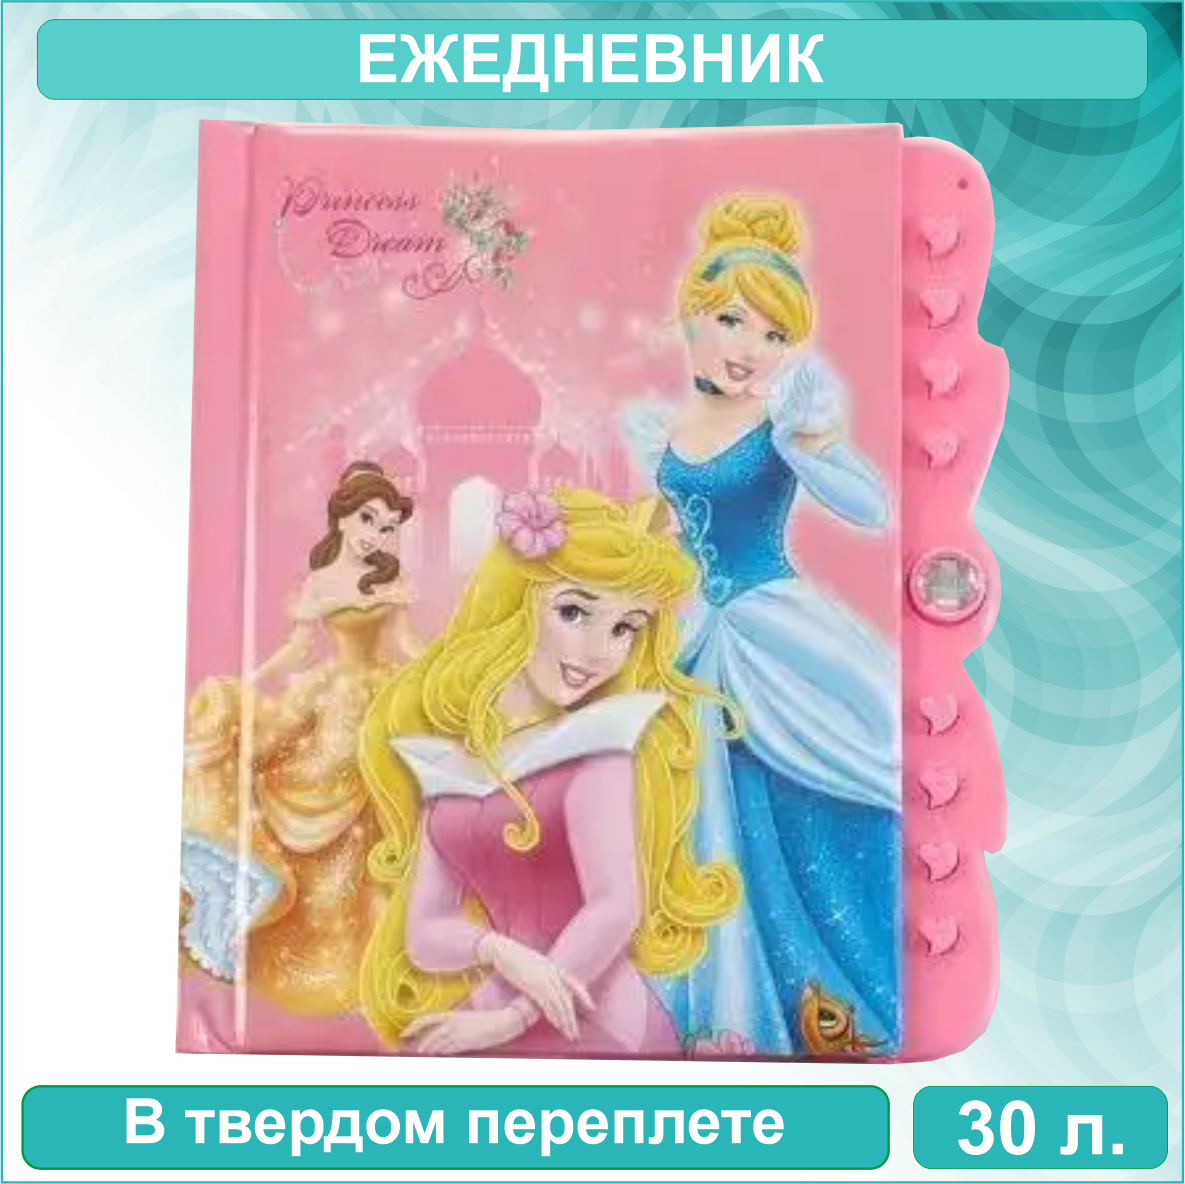 Ежедневник "Принцессы" Disney (30 листов)